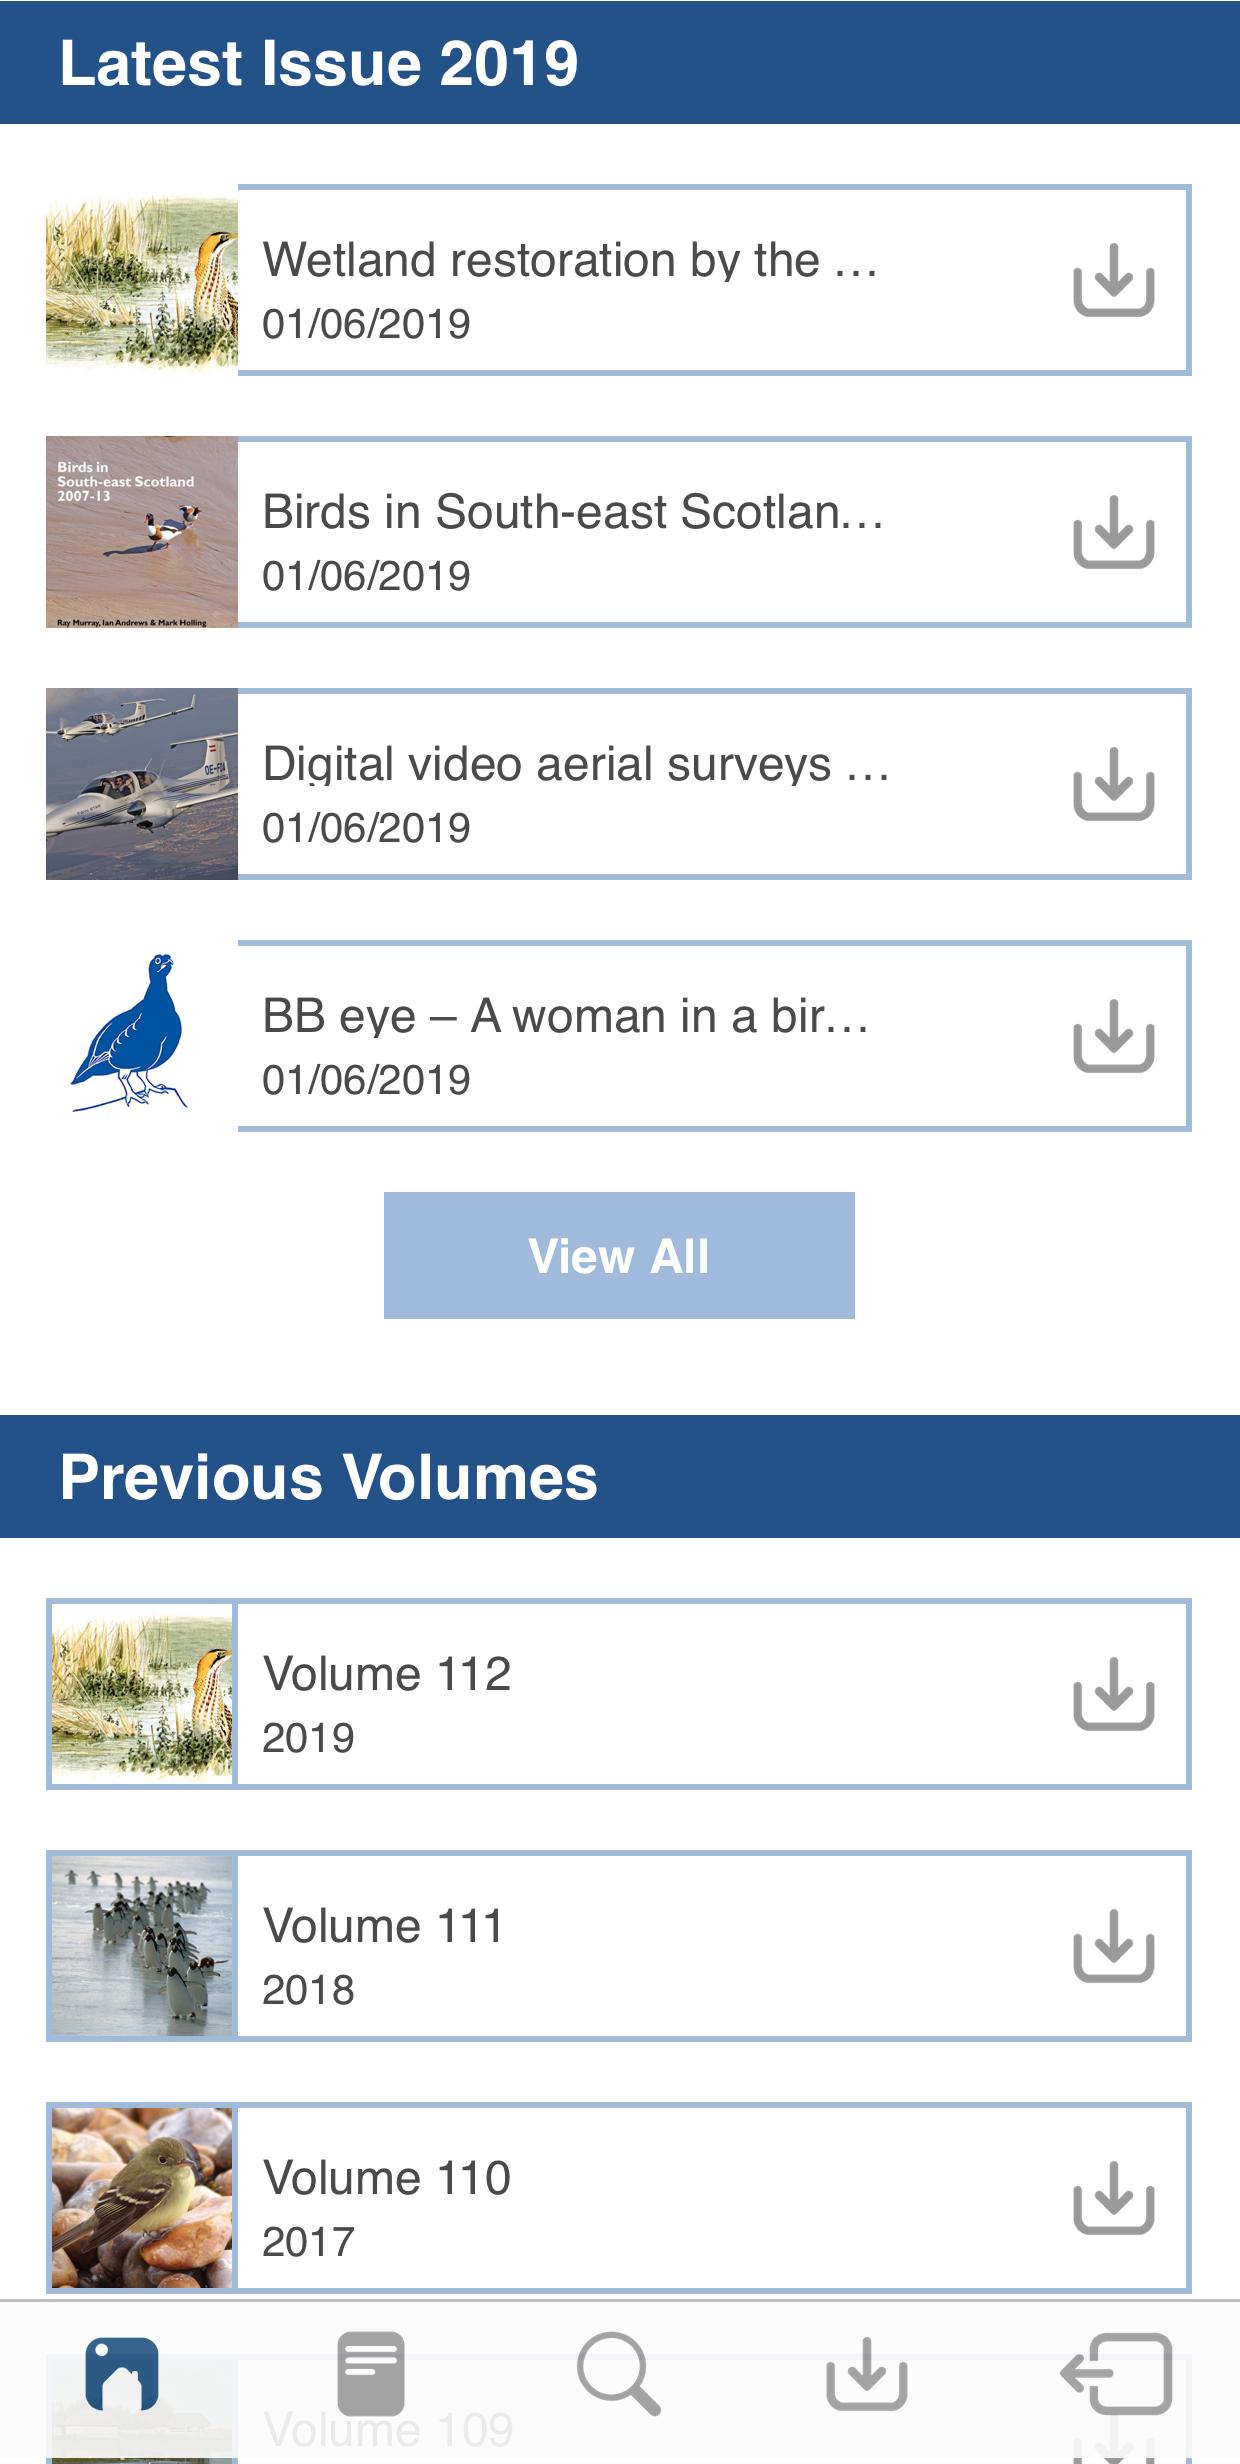 British Birds Online 14.0.0 Screenshot 1